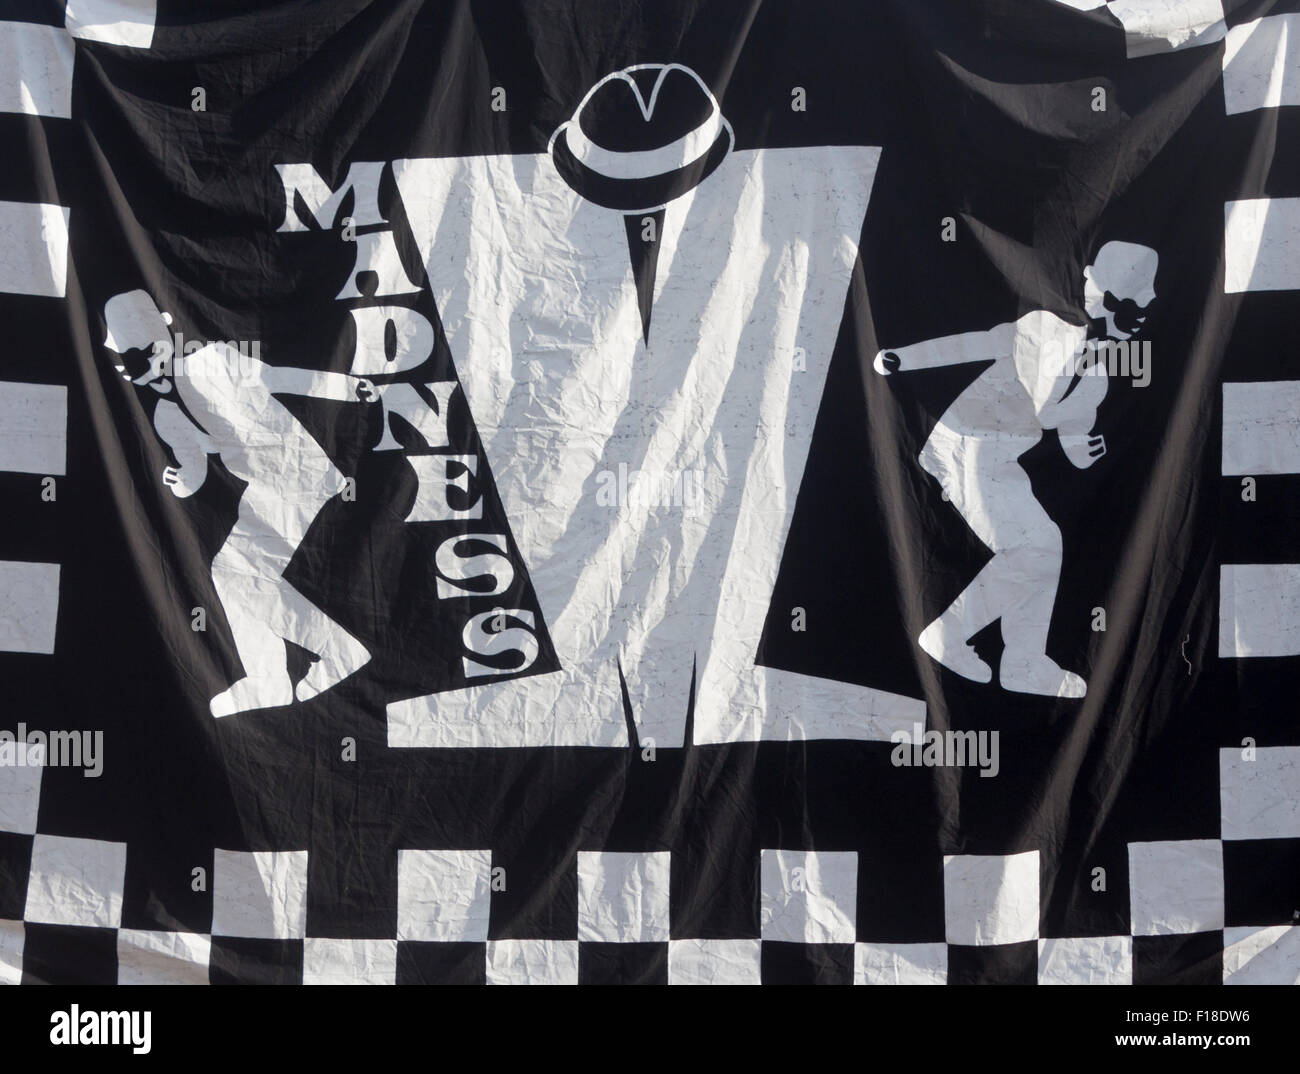 Madness deux tons logo emblème records fin des années 70 début des années 80 sur la bannière hanging on wall Banque D'Images